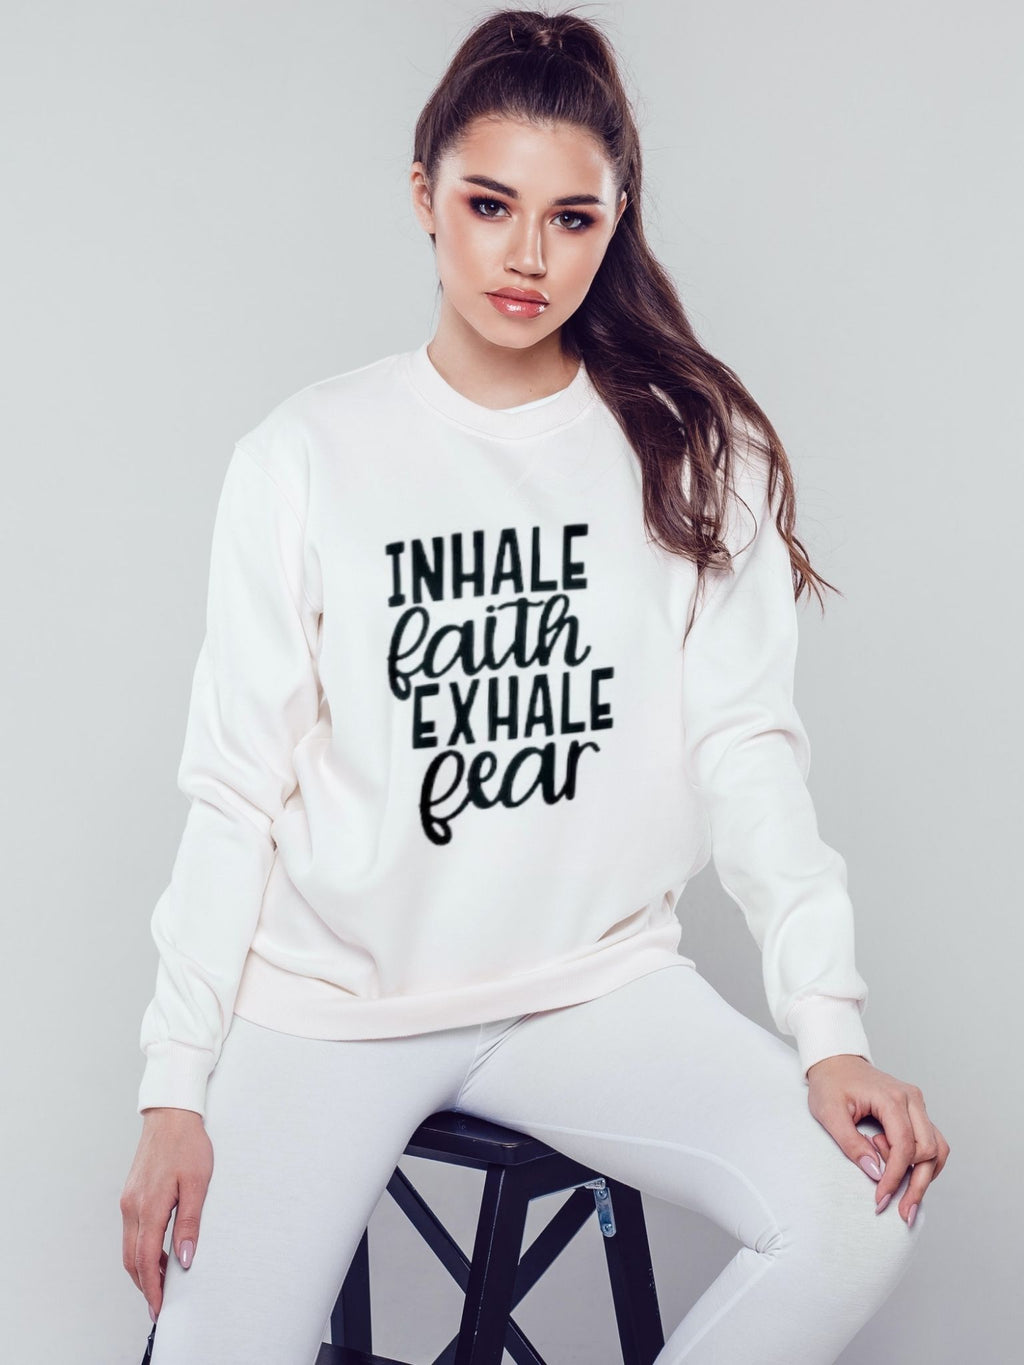 Inhale faith exhale fear - Sweatshirt